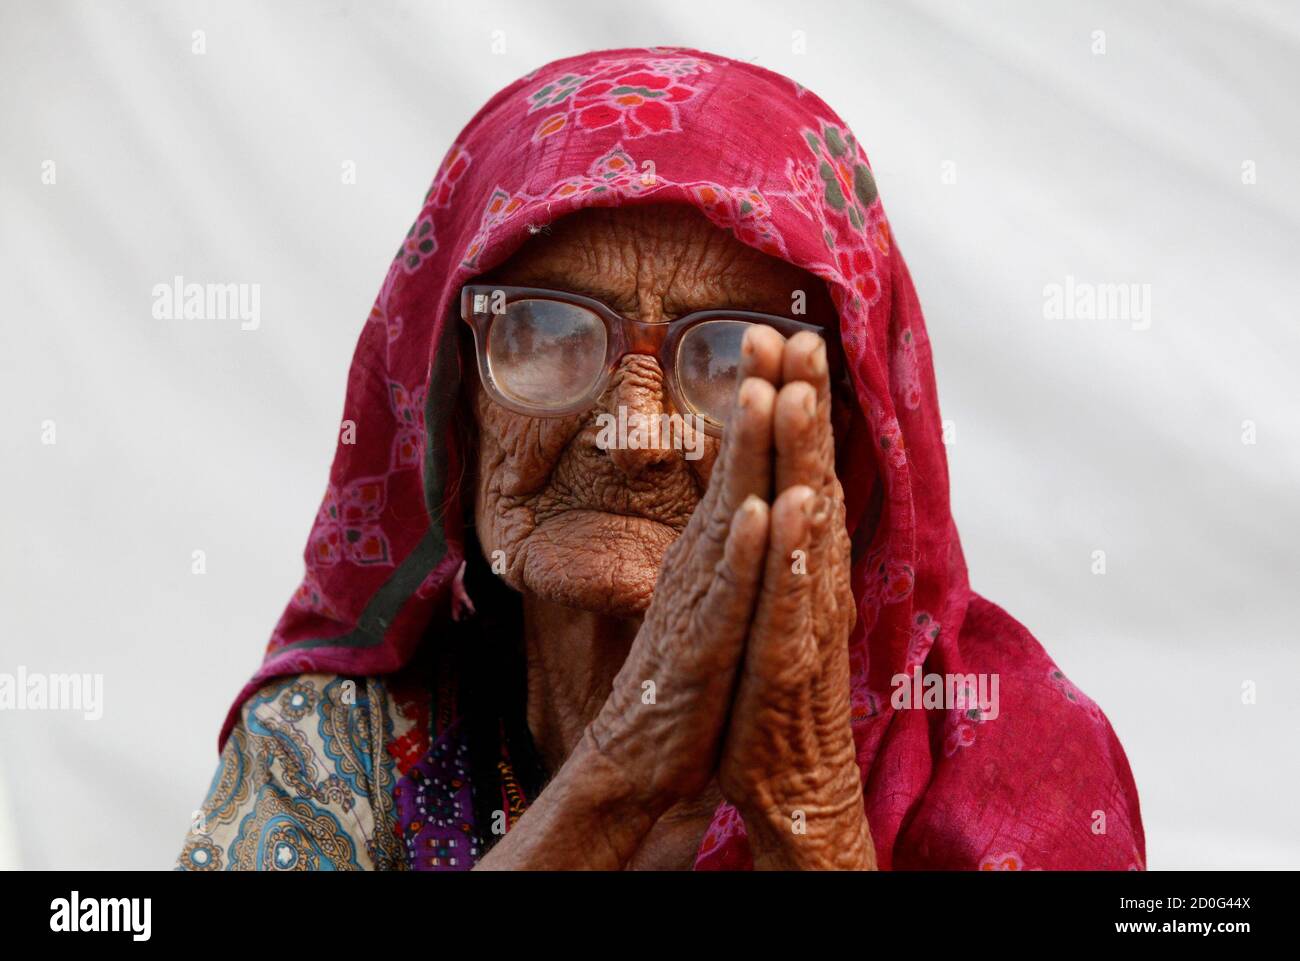 Zaib UN Nisa, eine hundertjährige Frau, die von Überschwemmungen vertrieben wurde, schließt sich ihren Handflächen an, um um Hilfe zu bitten, während sie mit anderen in einem Hilfslager für Flutopfer in Dadu, etwa 320 km (199 Meilen) nördlich von Karachi, am 11. Oktober 2010 Zuflucht sucht. REUTERS/Akhtar Soomro (PAKISTAN - Tags: KATASTROPHENBILDER DES TAGES) Stockfoto